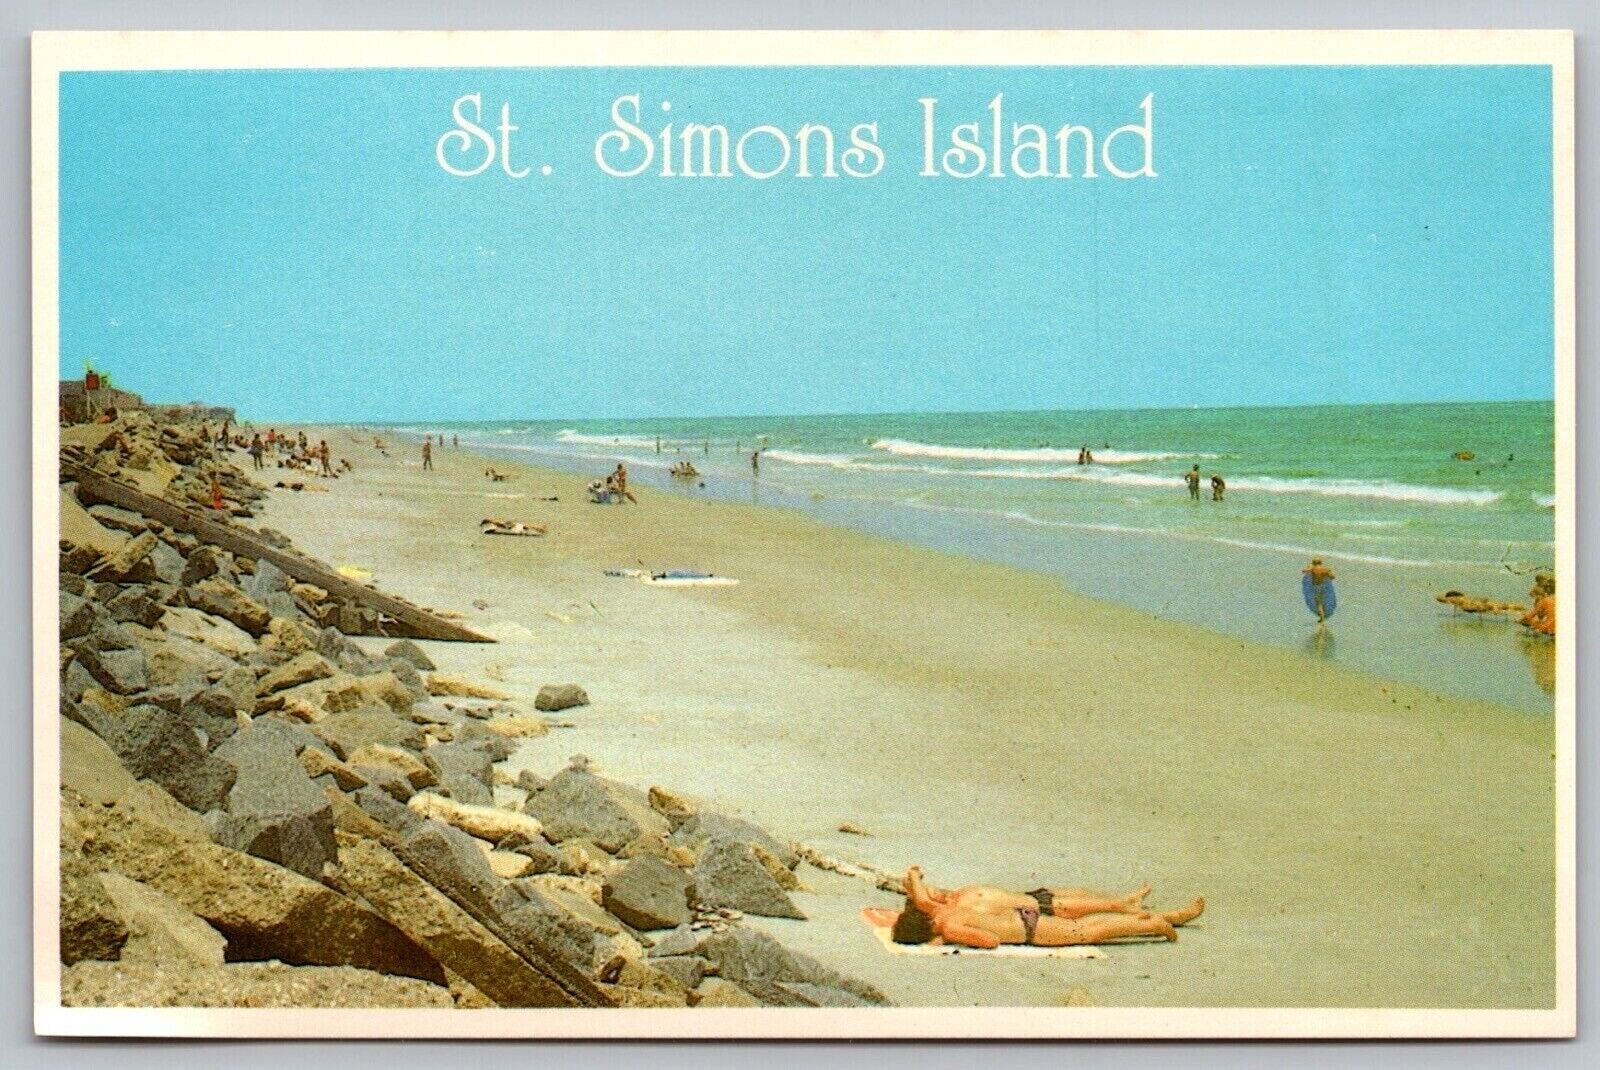 Saint Simons Island Georgia Recreation Center Oceanfront Shoreline VTG Postcard